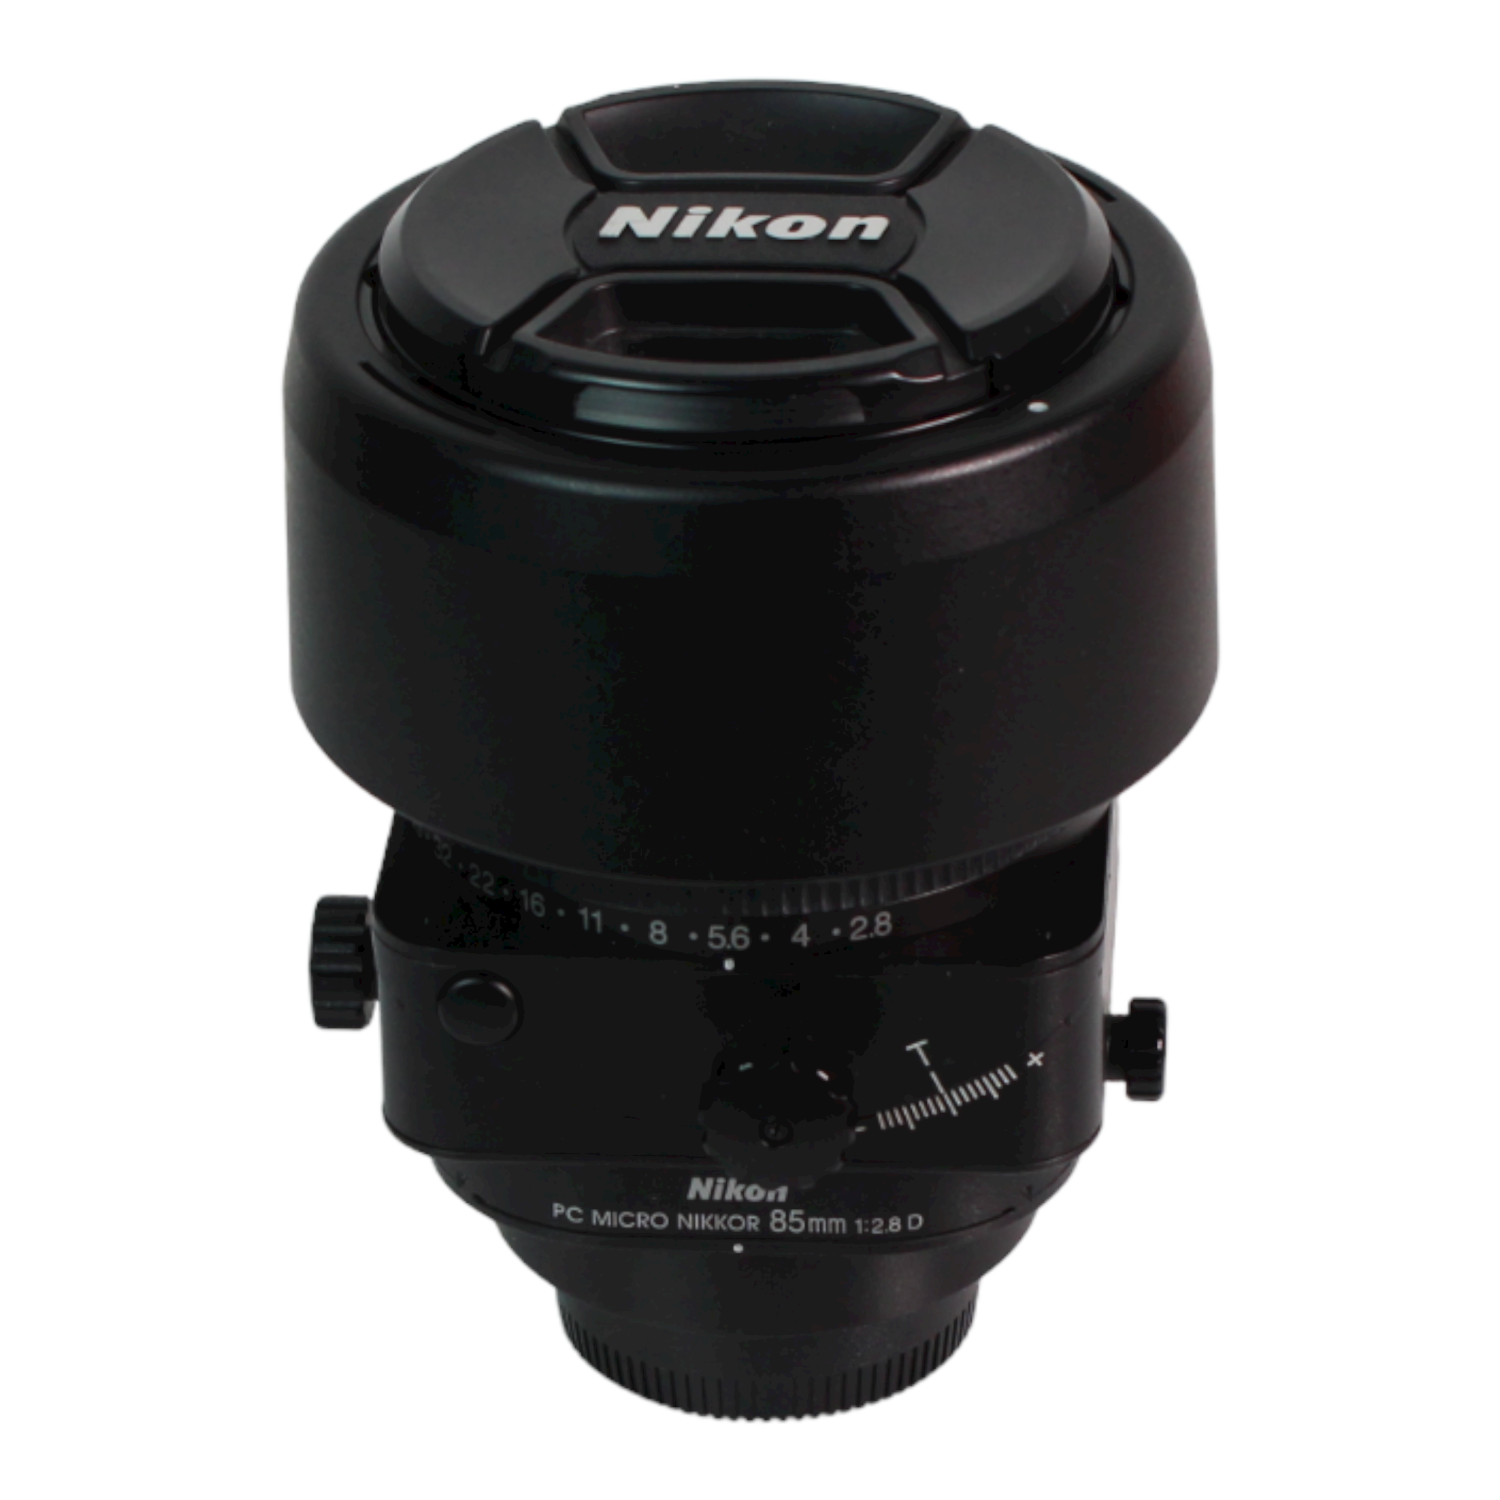 Refurbished (Good) - Nikon PC-E Micro 85mm f/2.8D Tilt-Shift Lens - F-Mount Lens Full-Frame